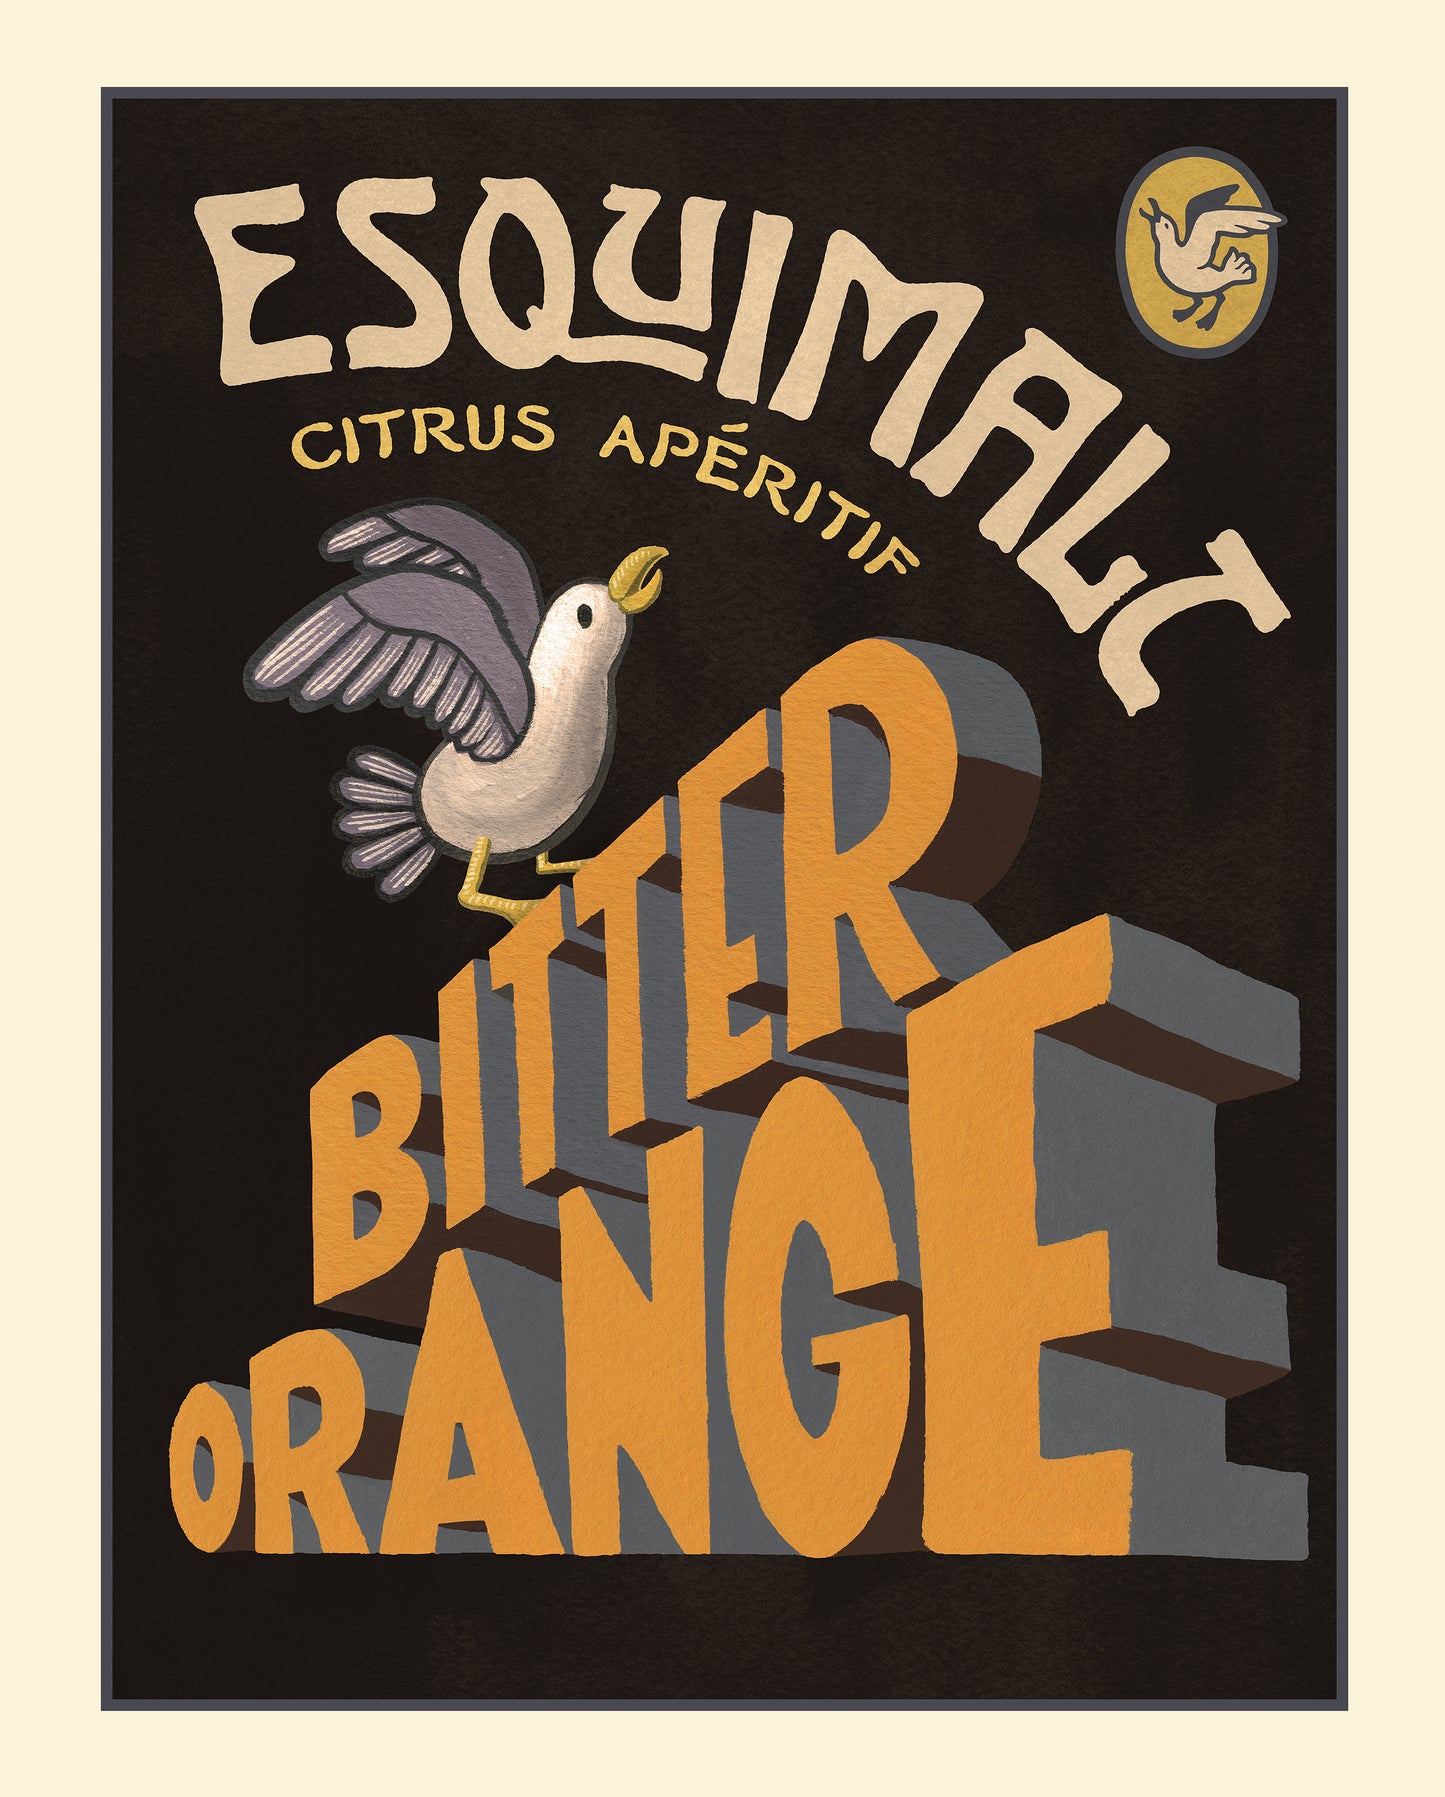 Bitter Orange Poster